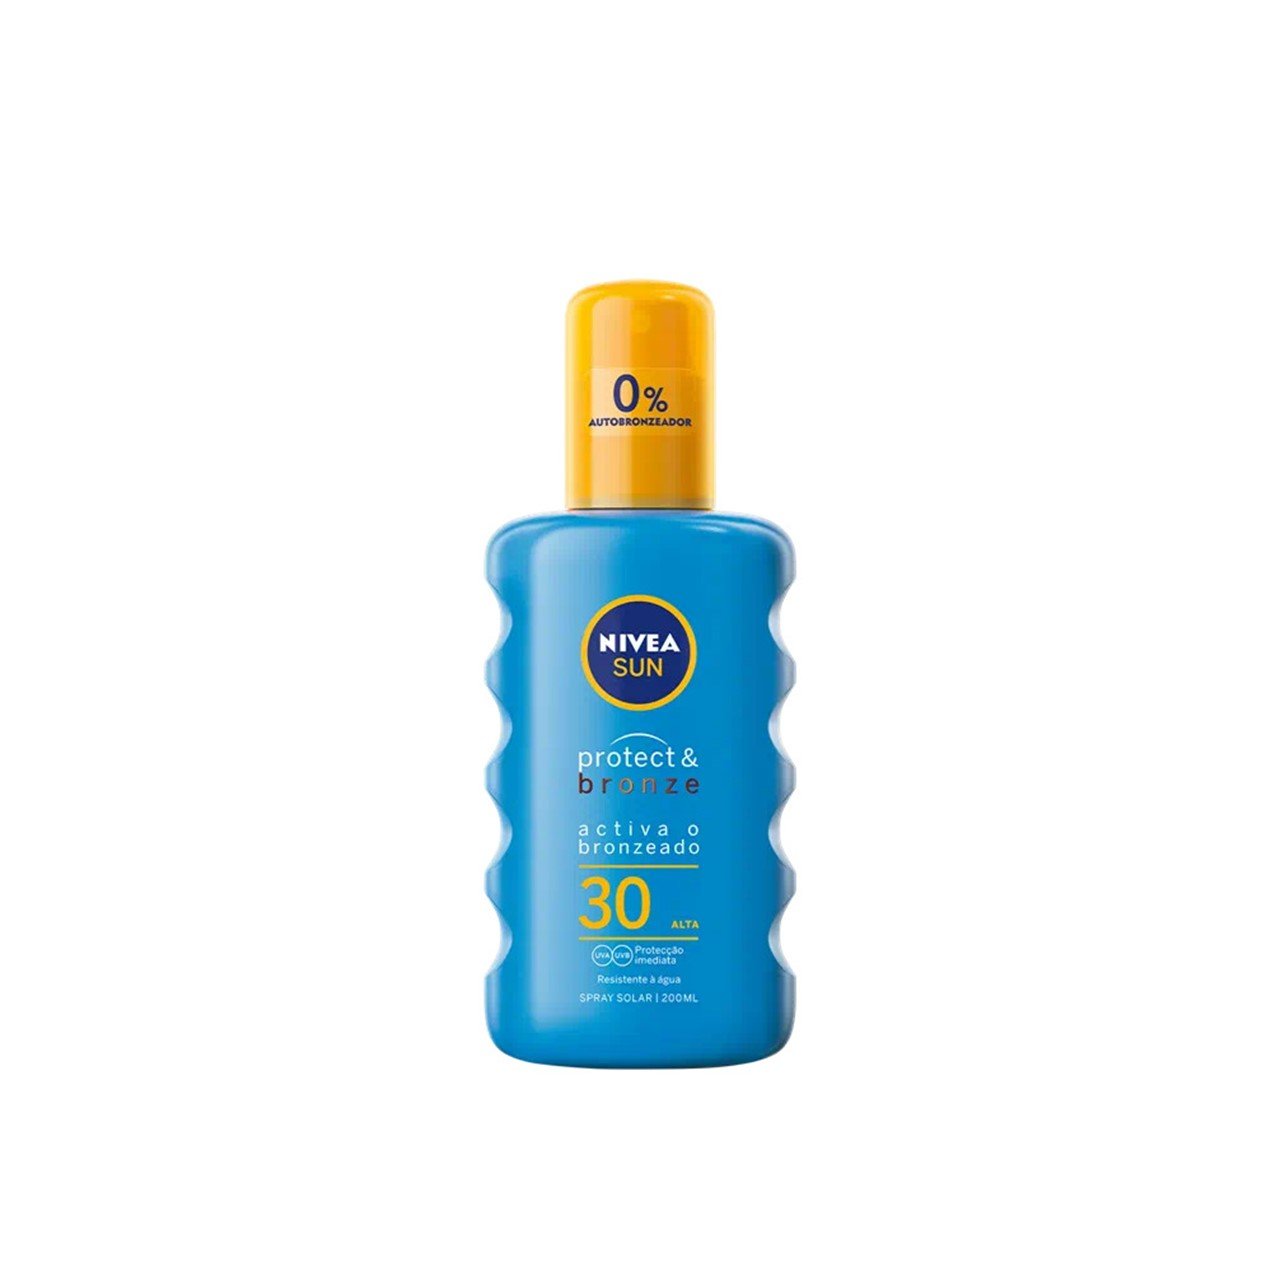 Nivea Sun Protect & Bronze Sunscreen Spray SPF30